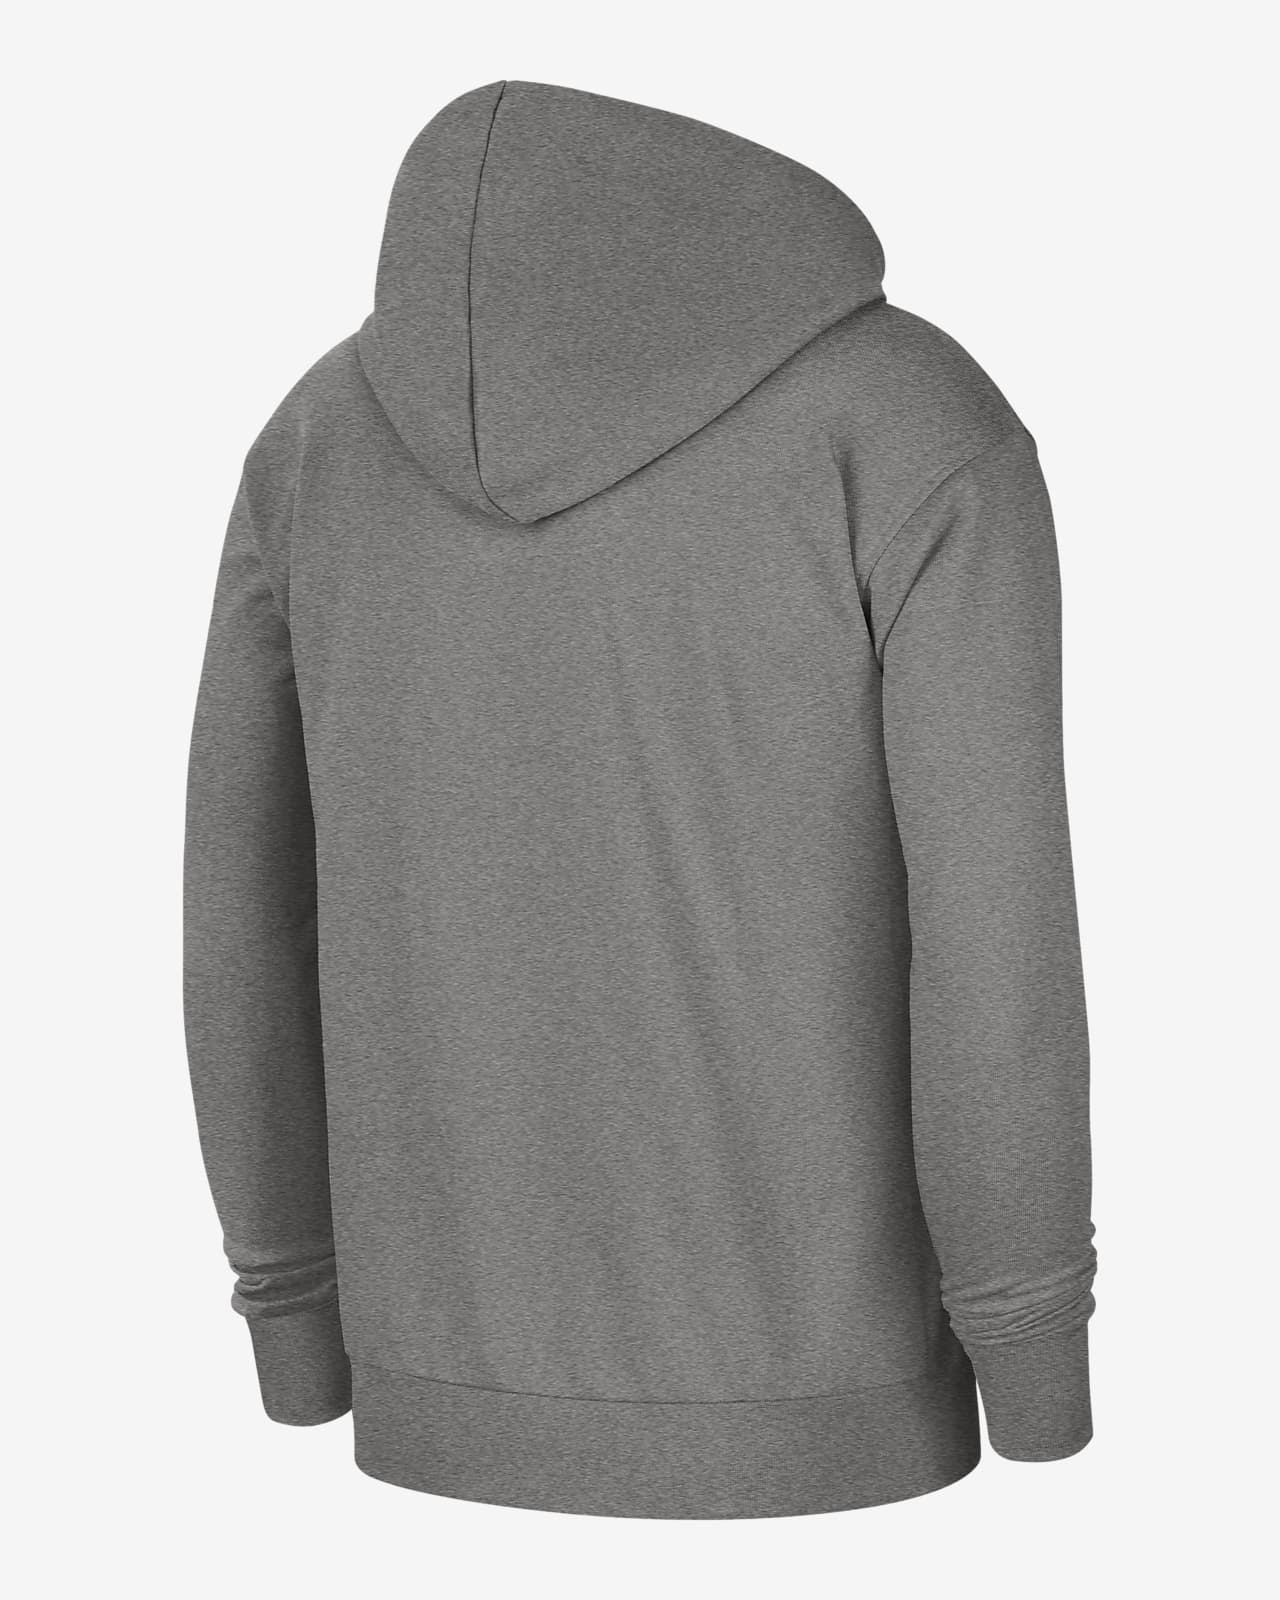 standard fit nike hoodie